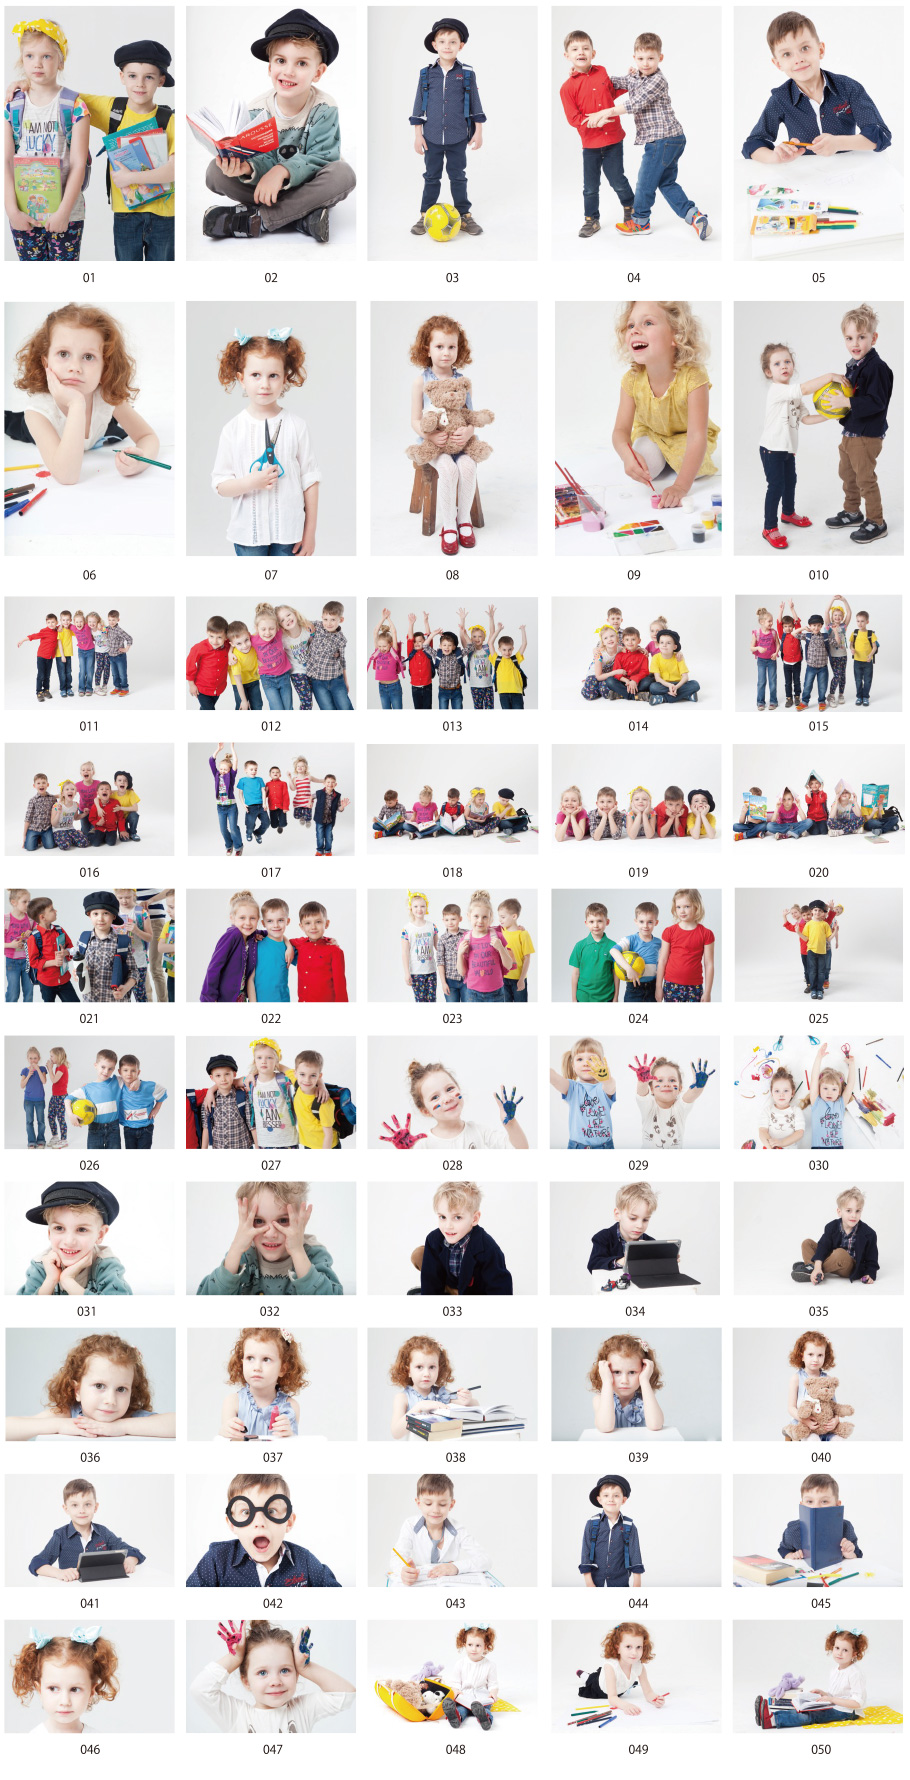 Foreign children photo vol.1